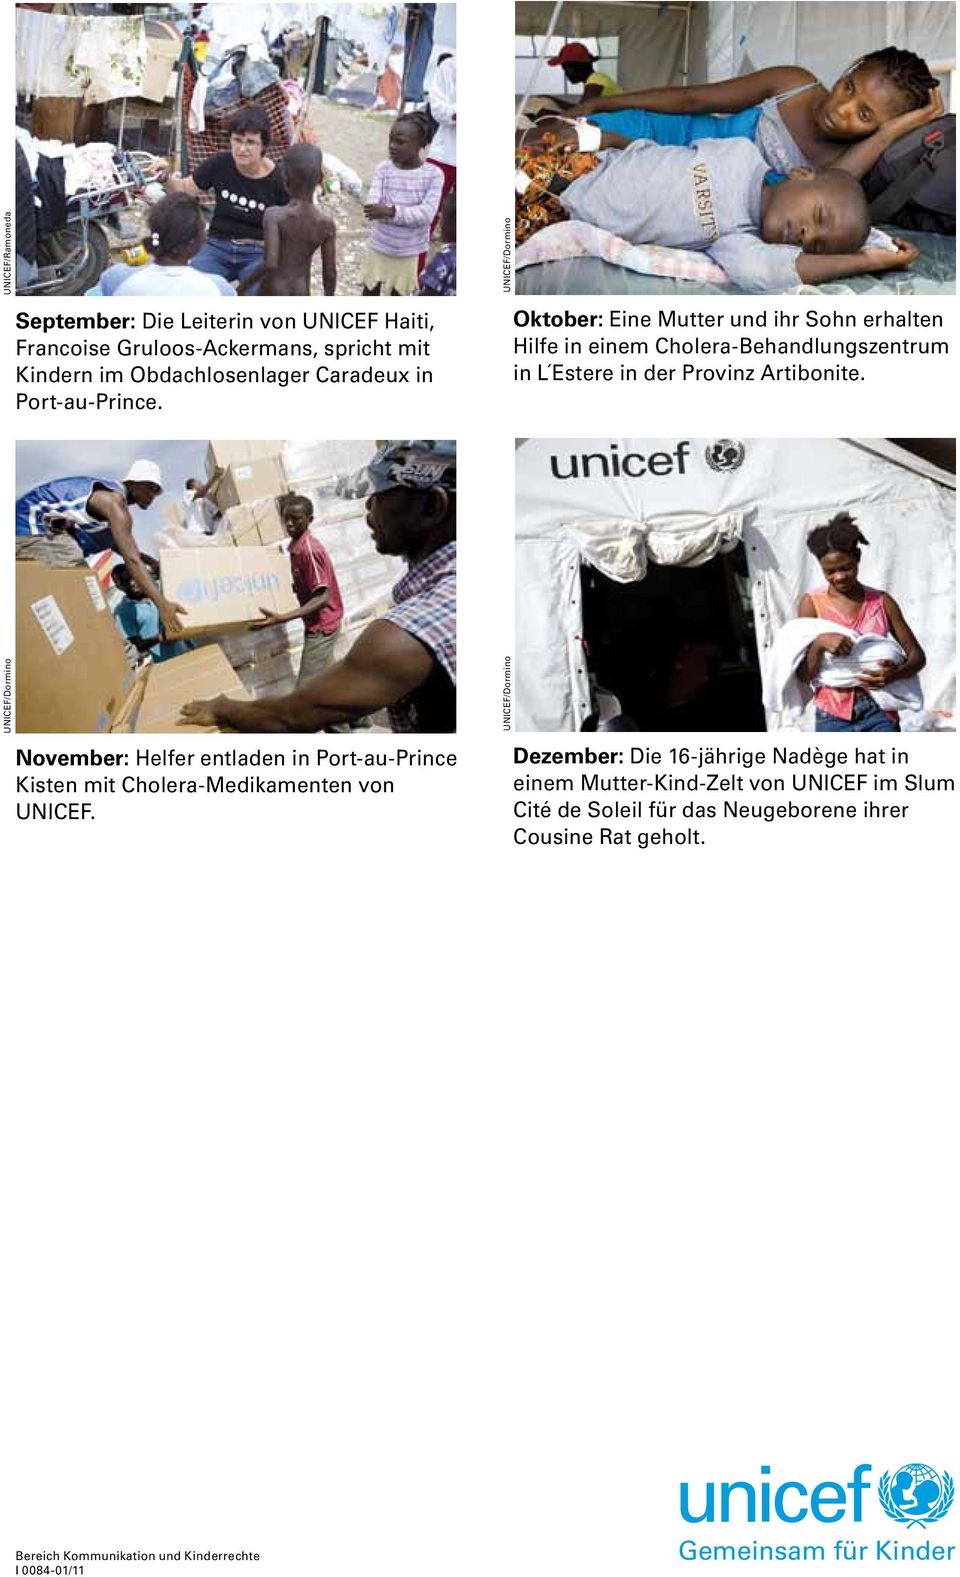 UNICEF/Dormino November: Helfer entladen in Port-au-Prince Kisten mit Cholera-Medikamenten von UNICEF.